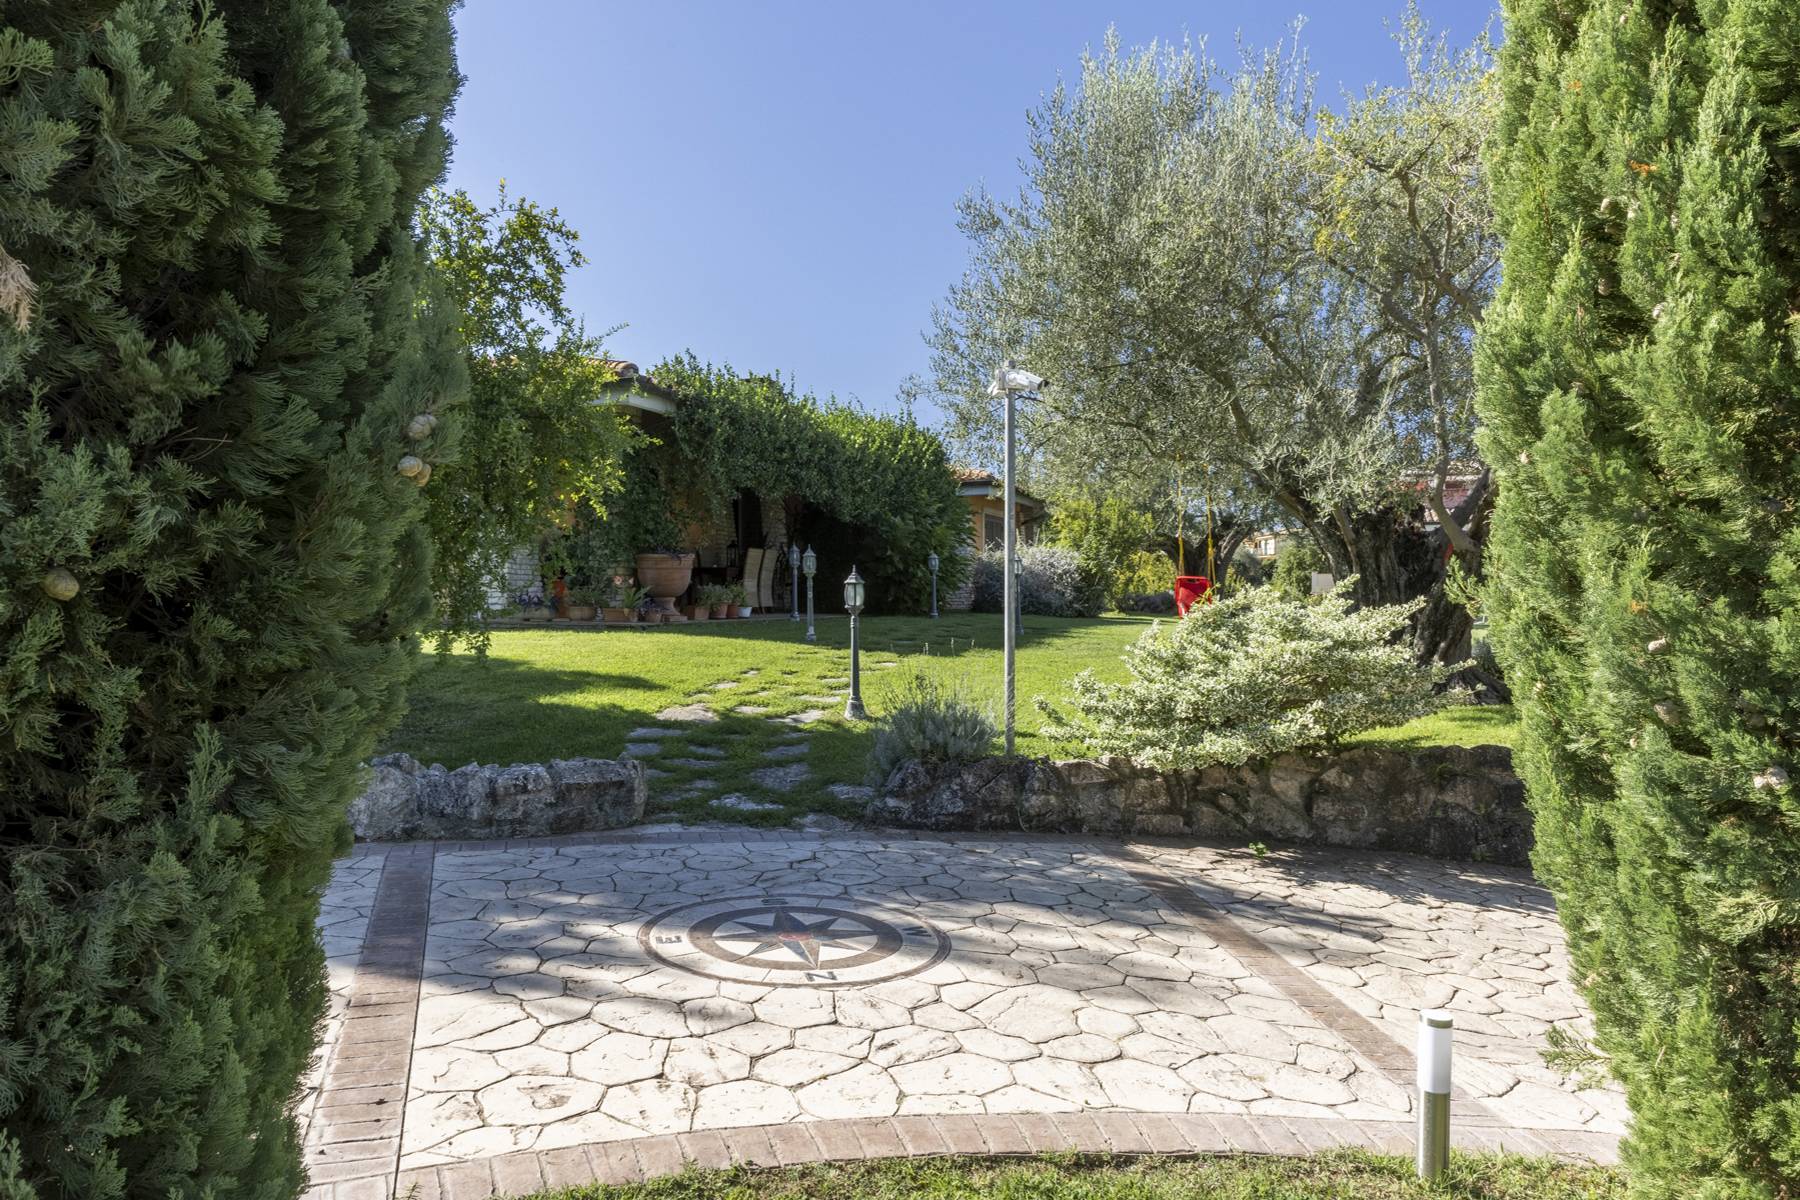 Villa in Vendita a Riano: 5 locali, 500 mq - Foto 10